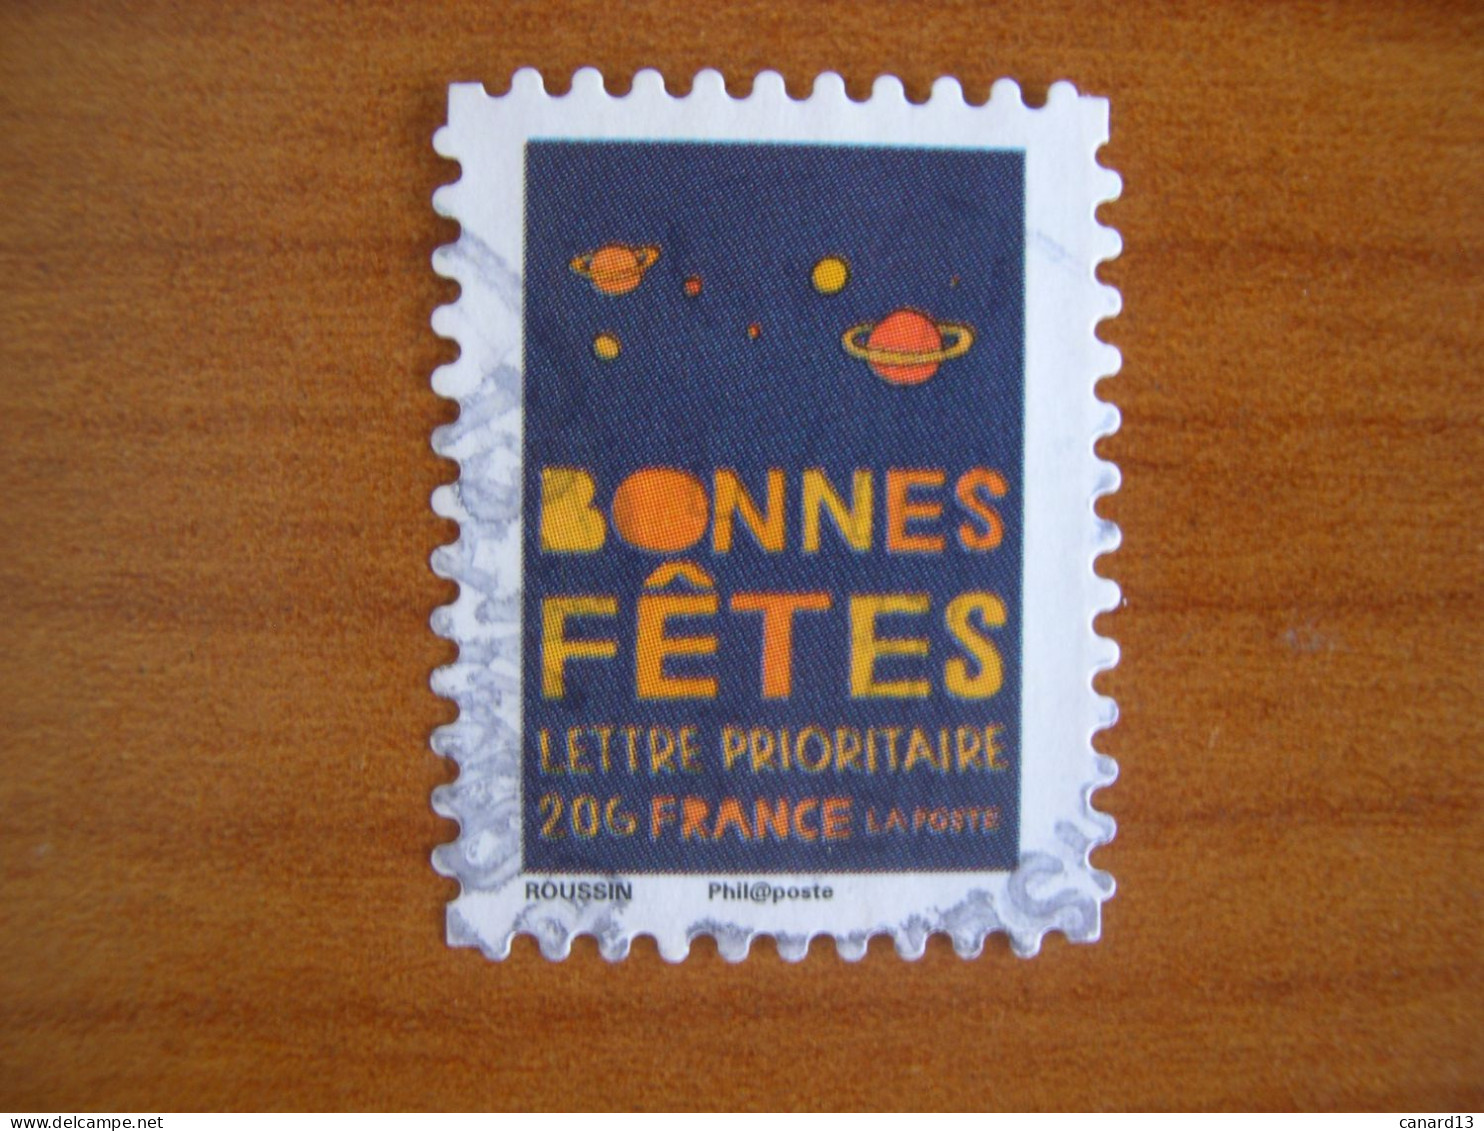 France Obl   N° 239 Cachet Rond Noir - Used Stamps